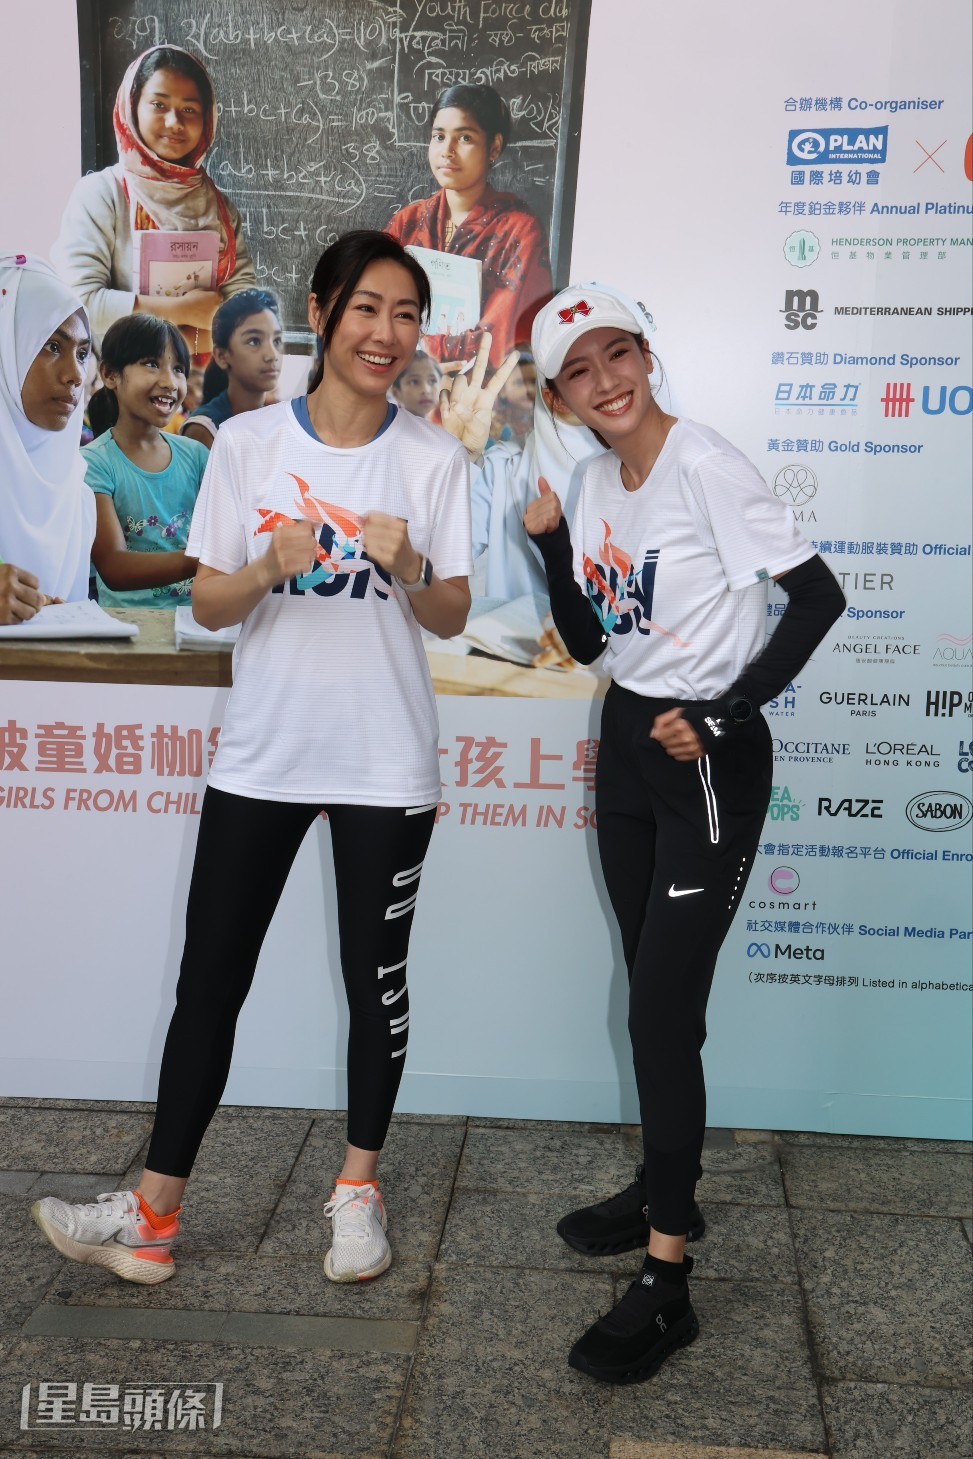 蔡思貝和胡定欣表示會參加3公里賽程。